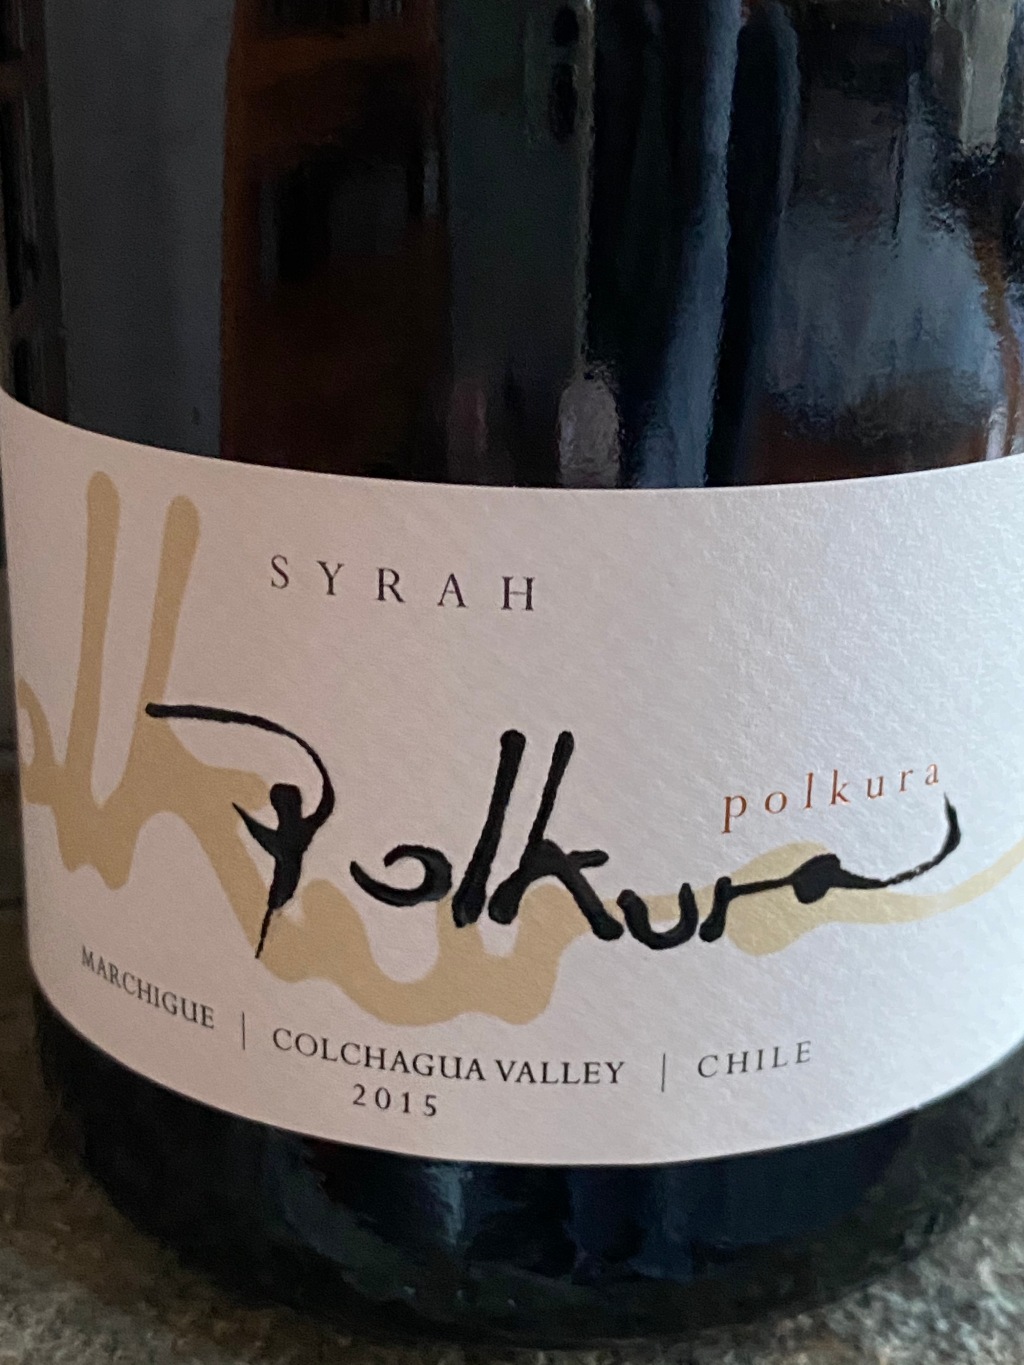 Wine Review: 2015 Polkura Syrah